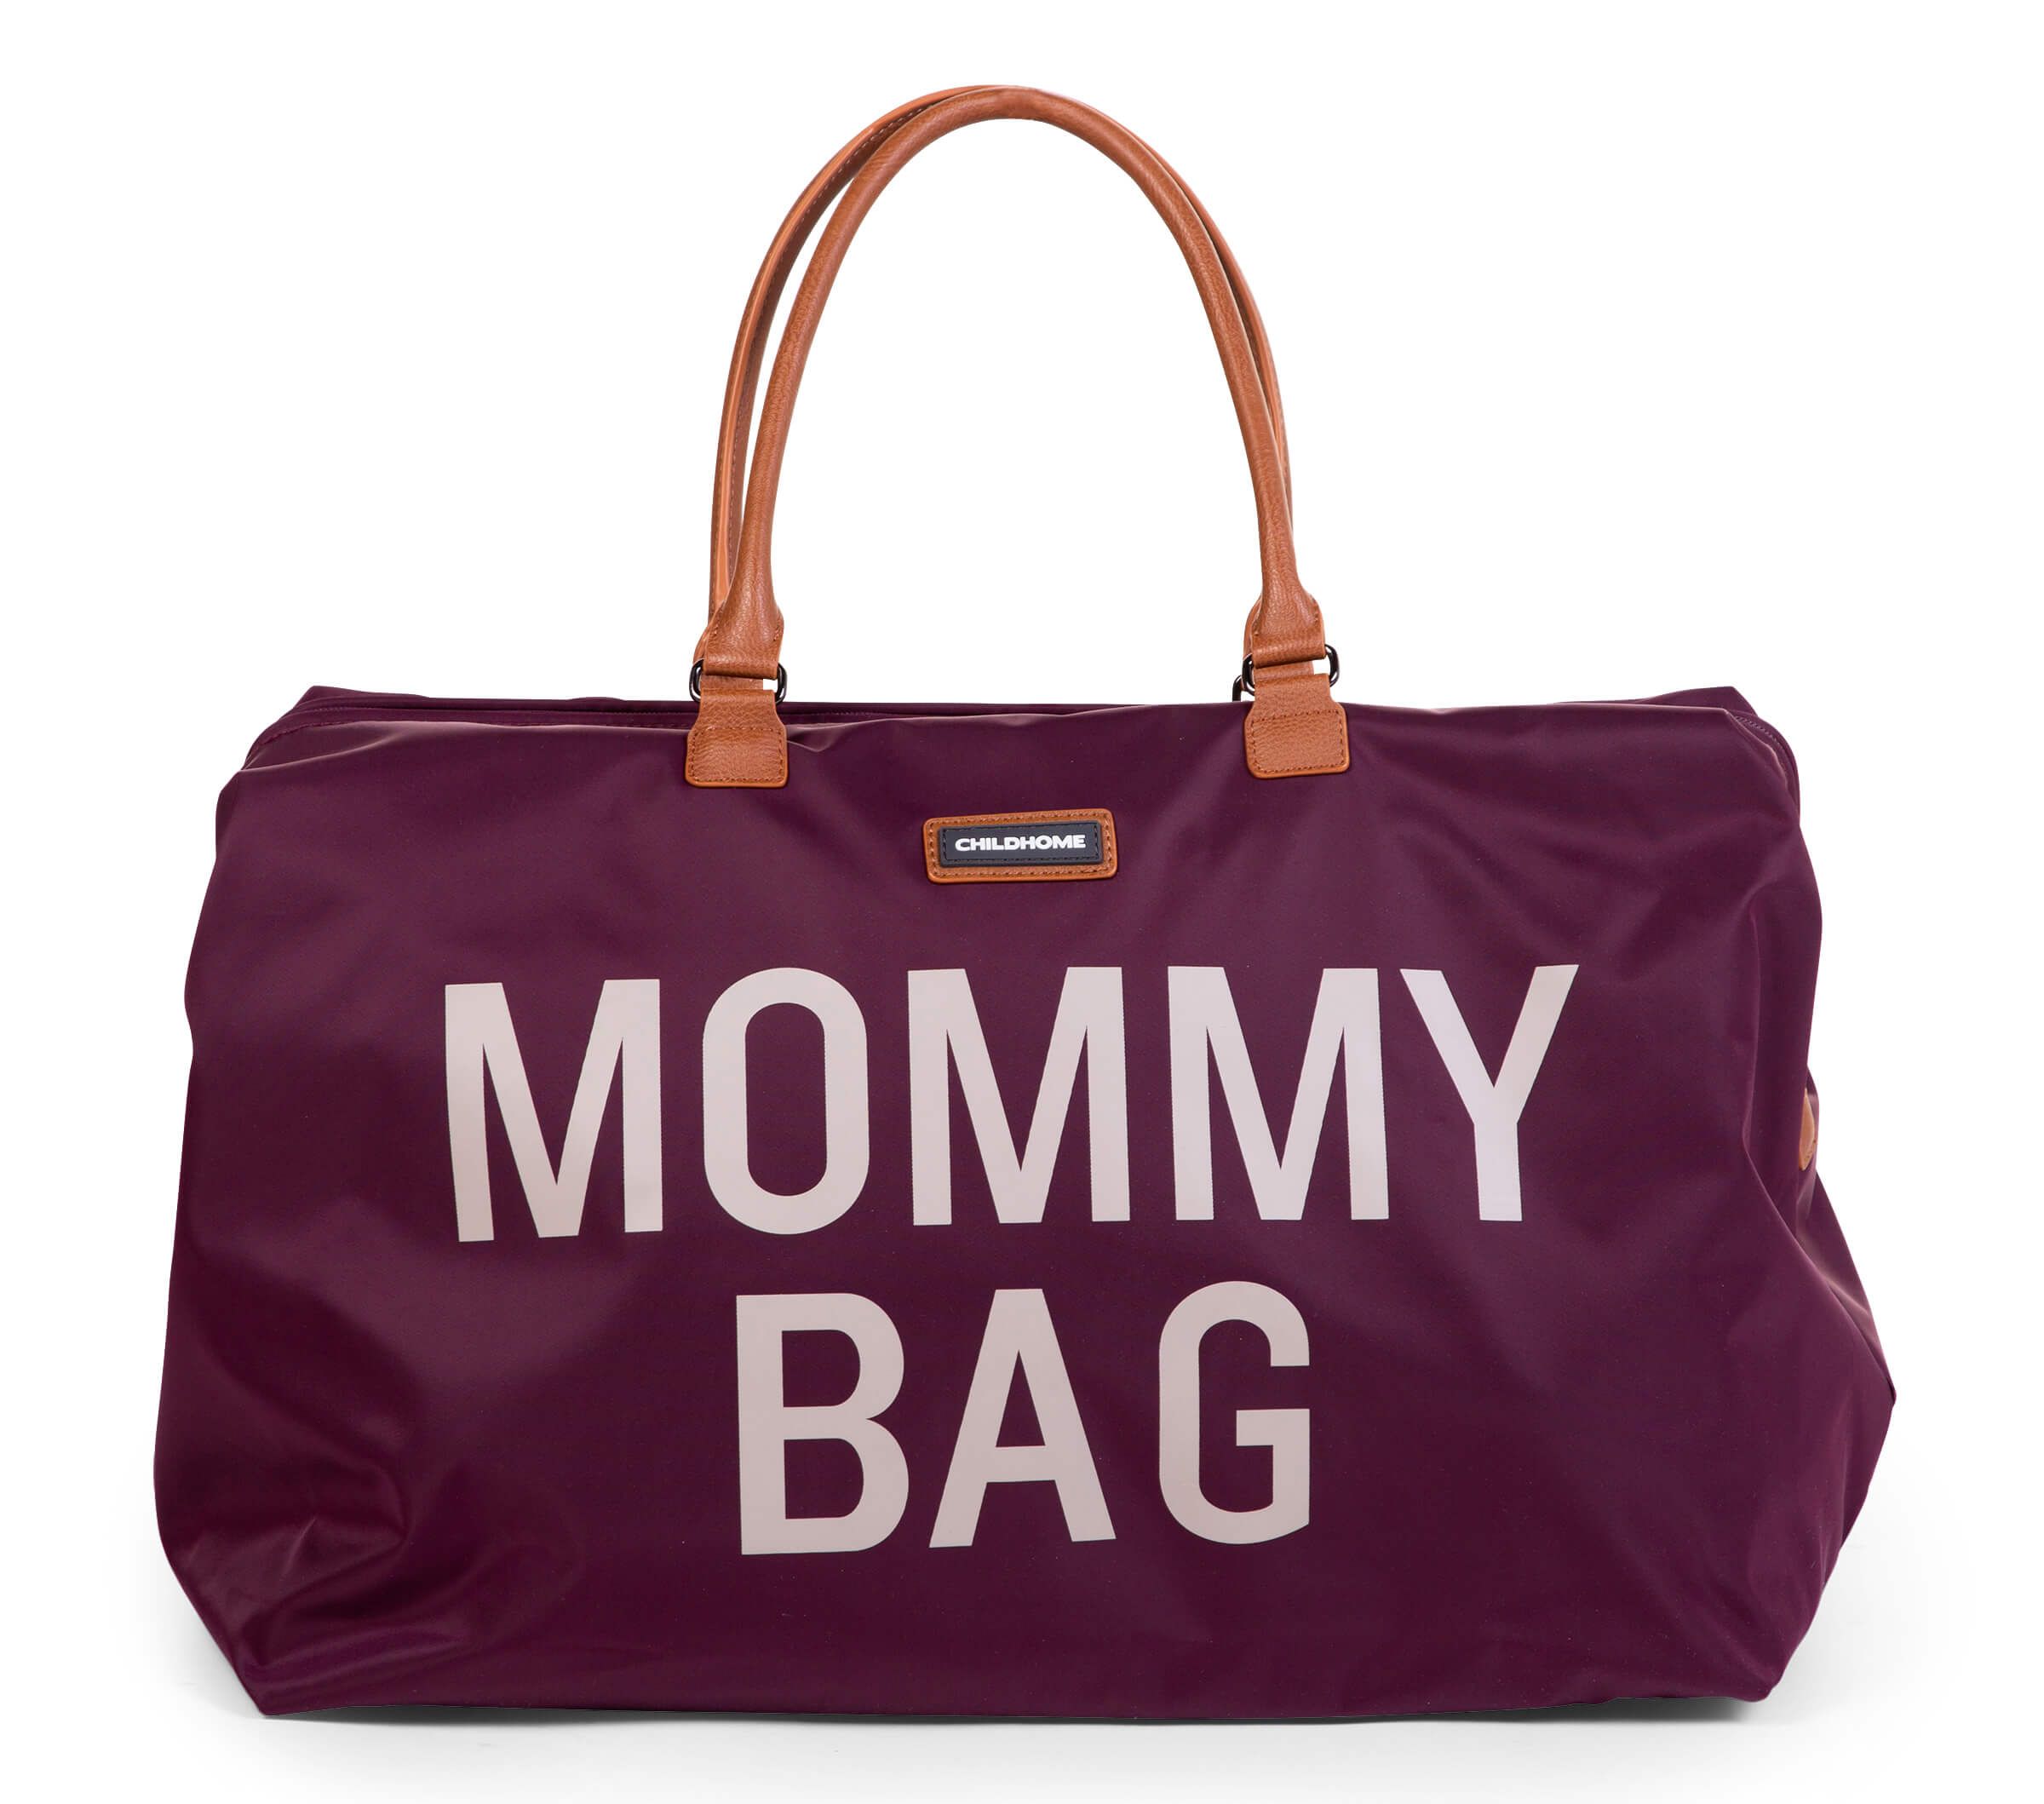 Сумка Childhome Mommy bag, баклажан (CWMBBAU) - фото 1